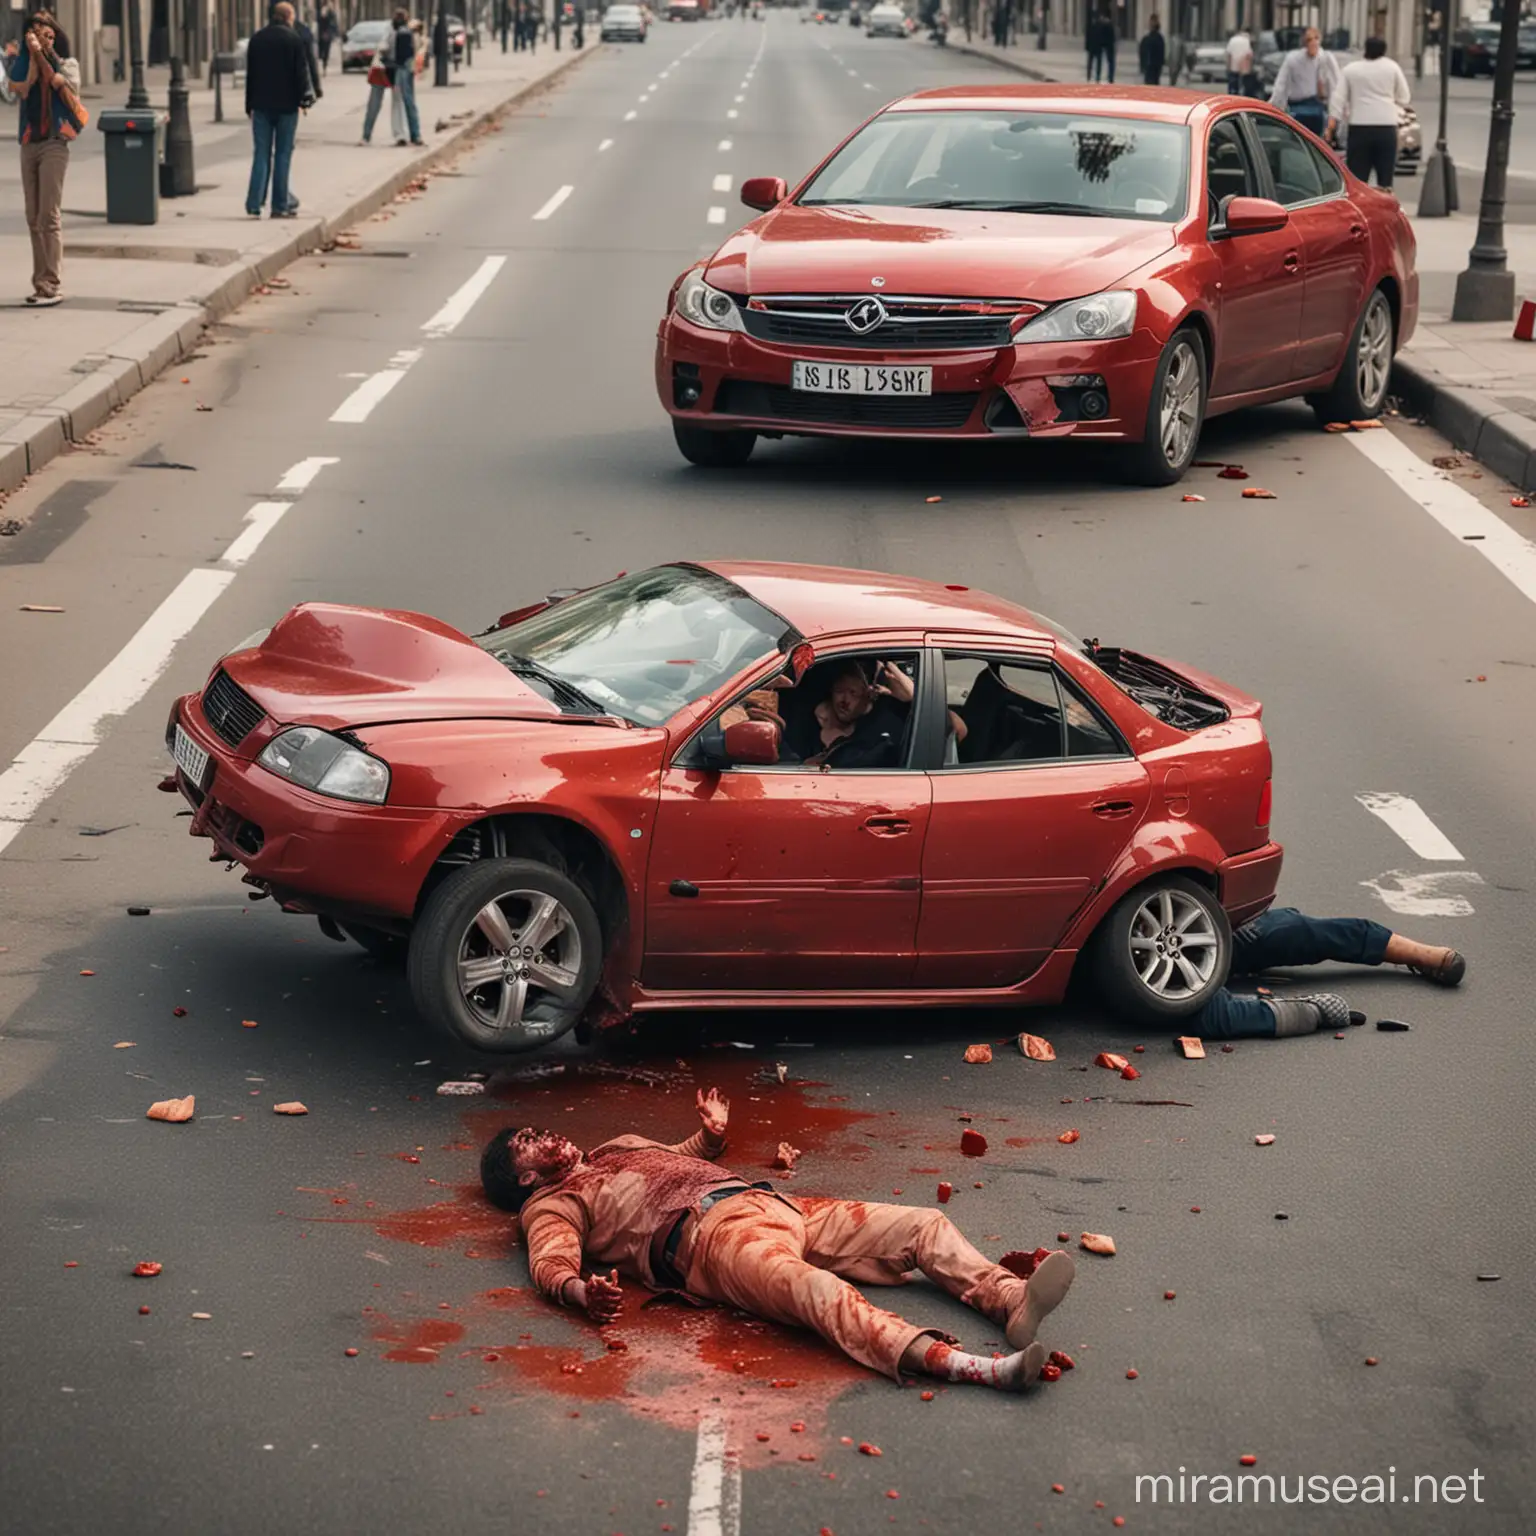 loo pilt, millel on kujutatud rasket autoavariid. lisa õnnetusse inimene, kes lamab verisena tänaval.